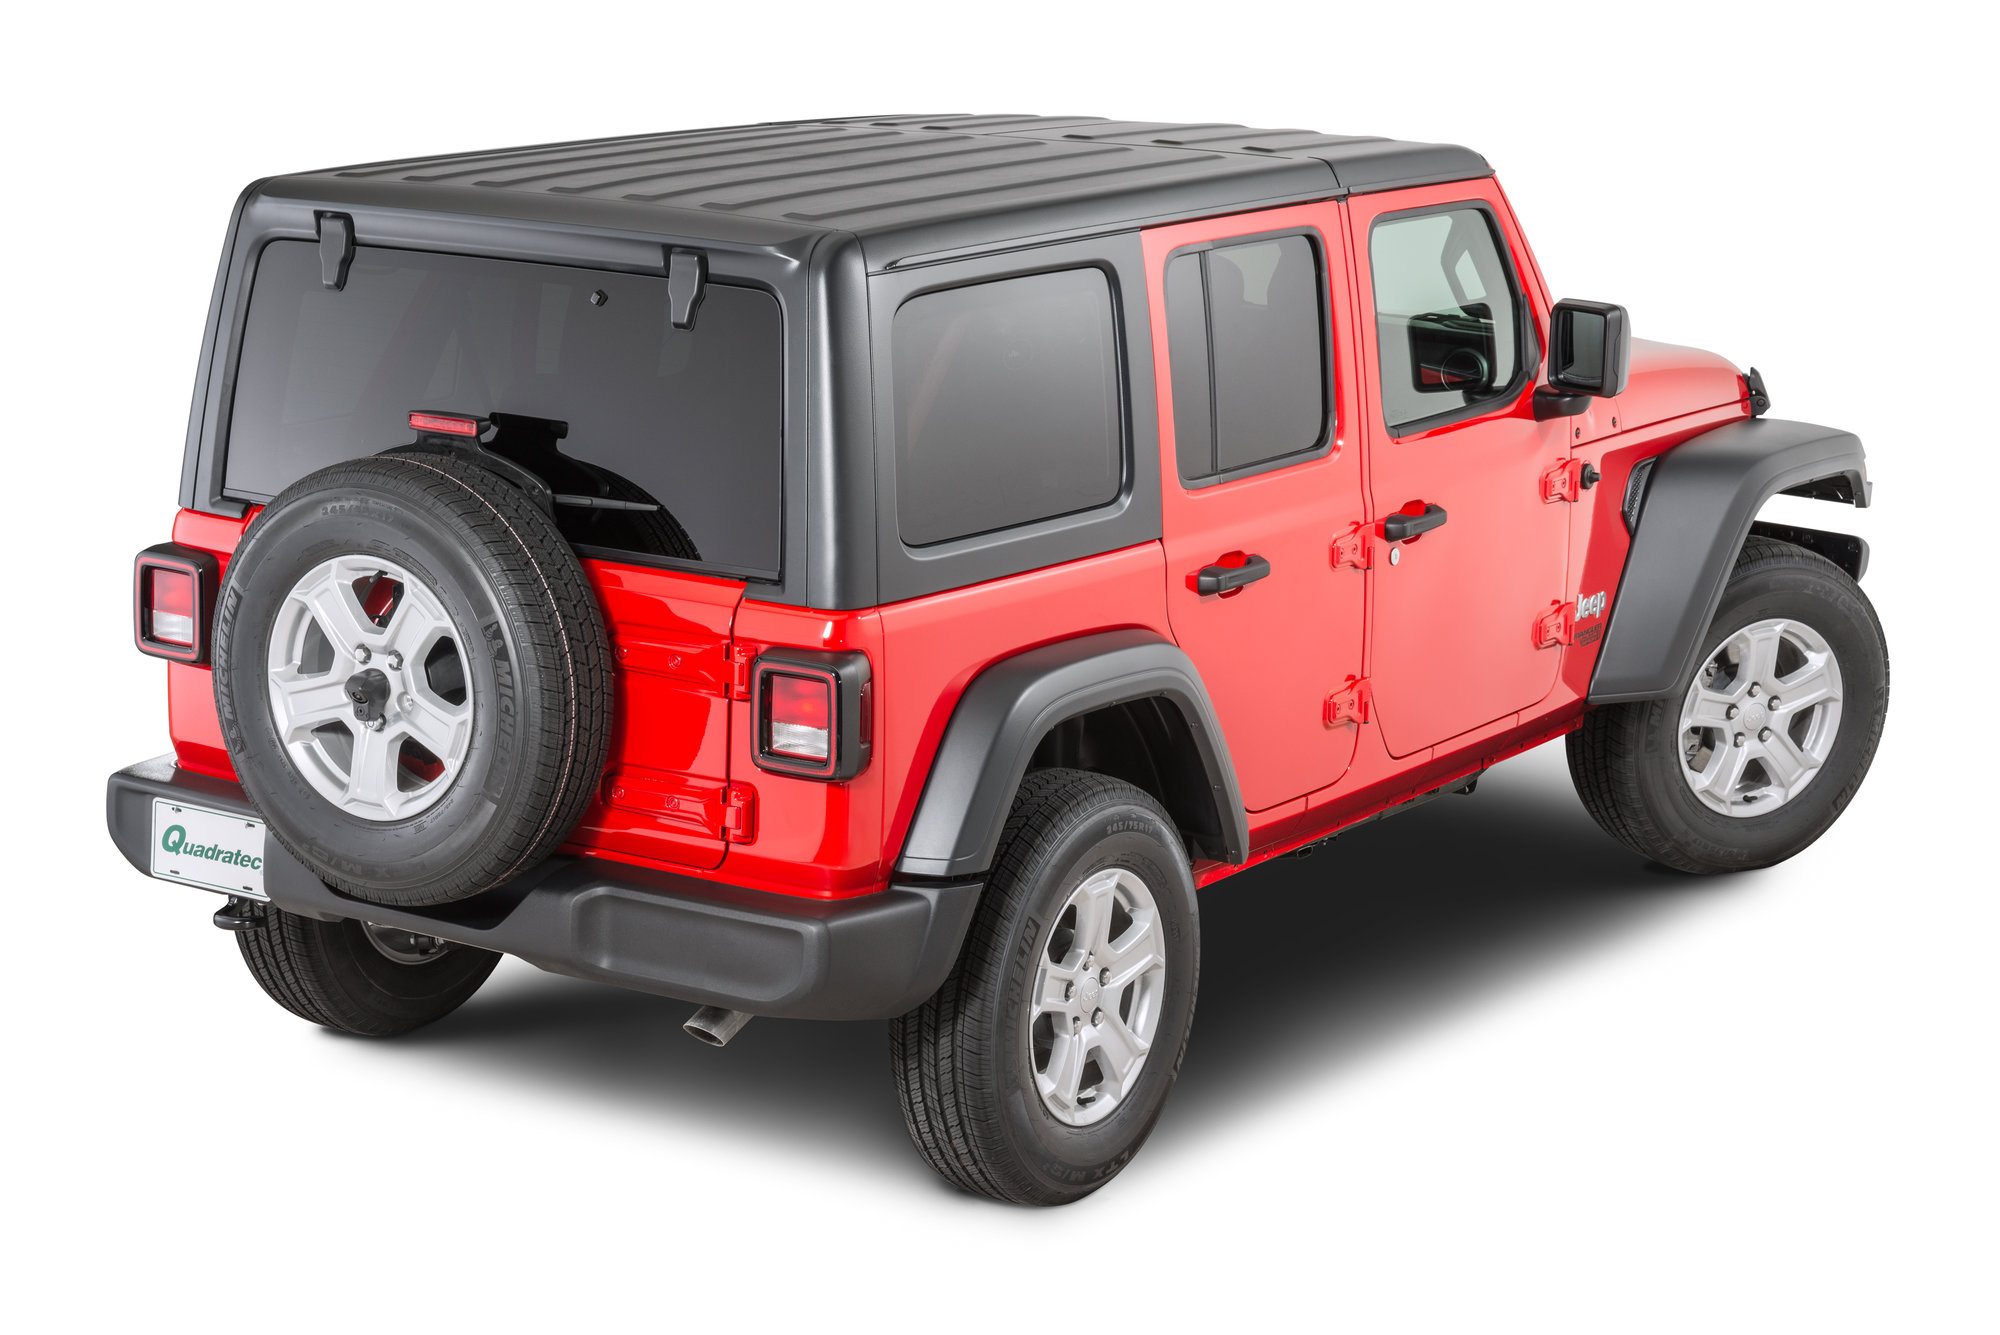 Afledning Evolve Uafhængighed Mopar Hardtop for 18-22 Jeep Wrangler JL Unlimited | Quadratec